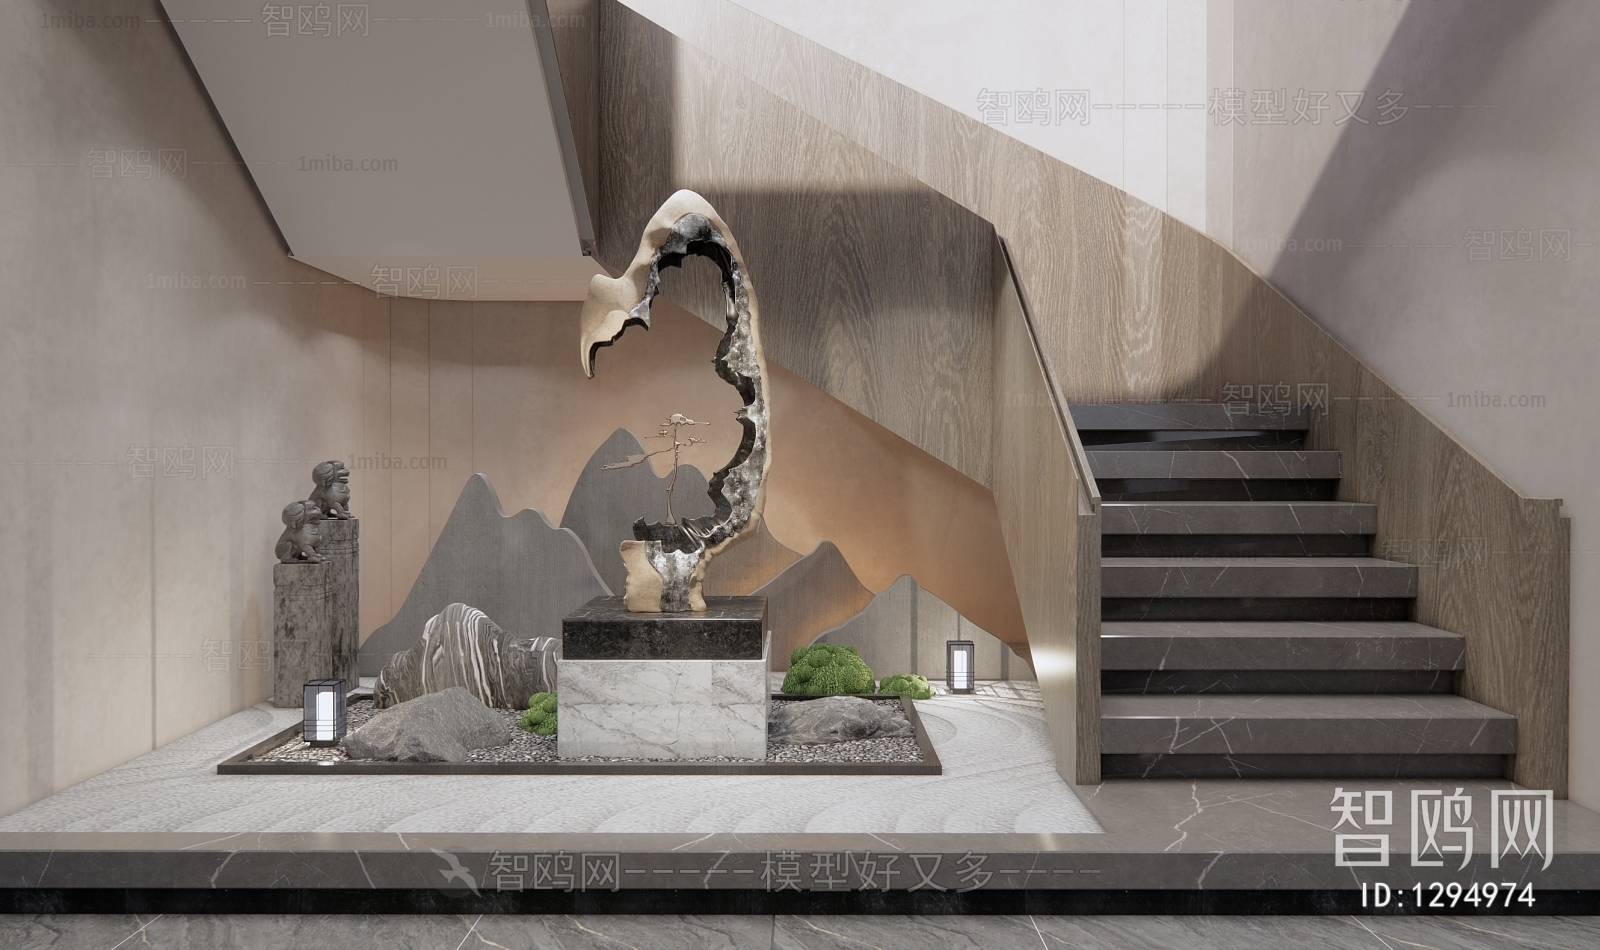 新中式雕塑小品 楼梯间景观小品